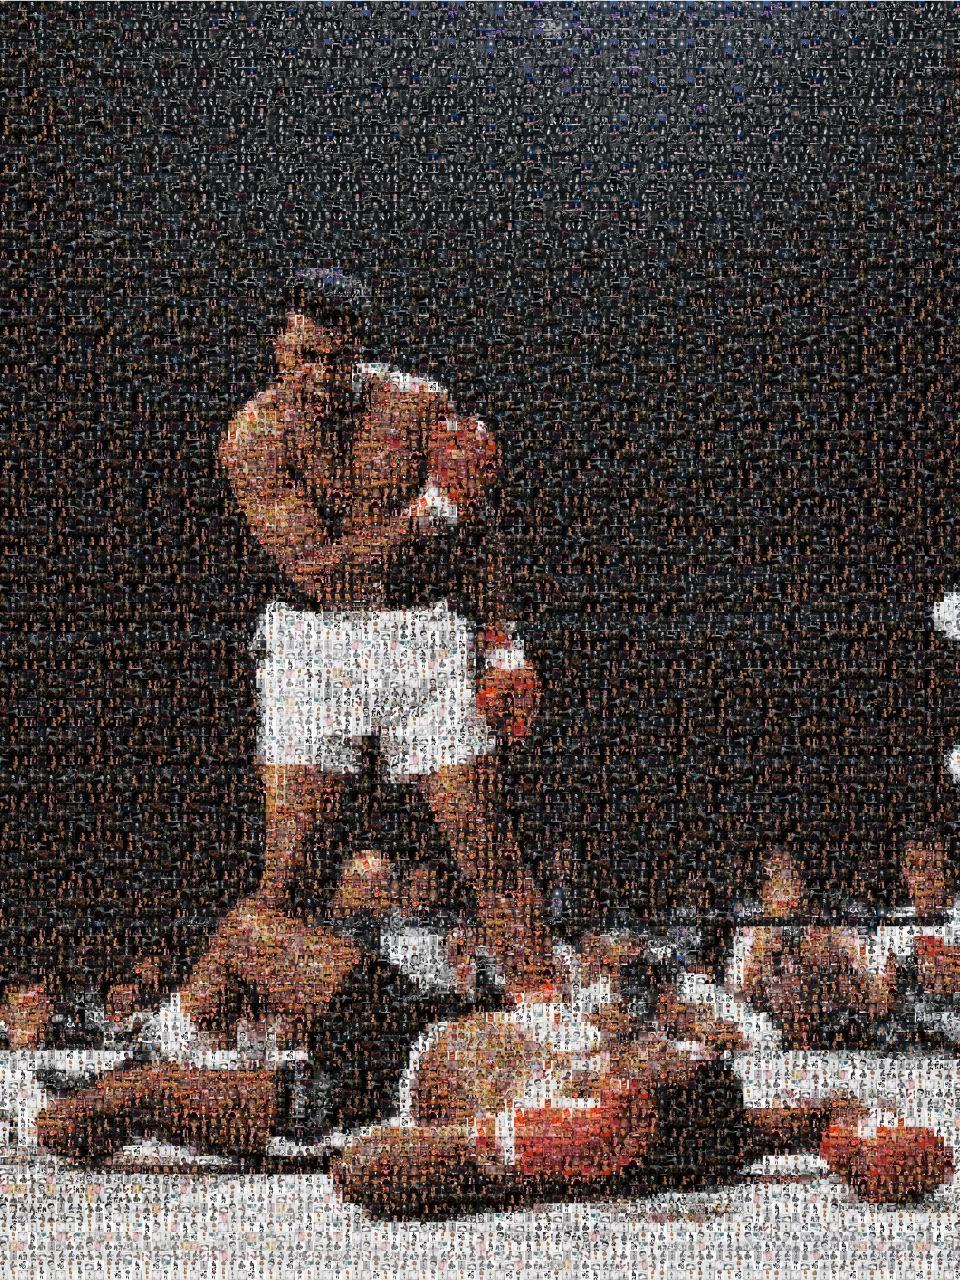 Still-Life Print Destro - Muhammad Ali, portrait 28x40  Photomosaïque - Photographie Pop Art non signée